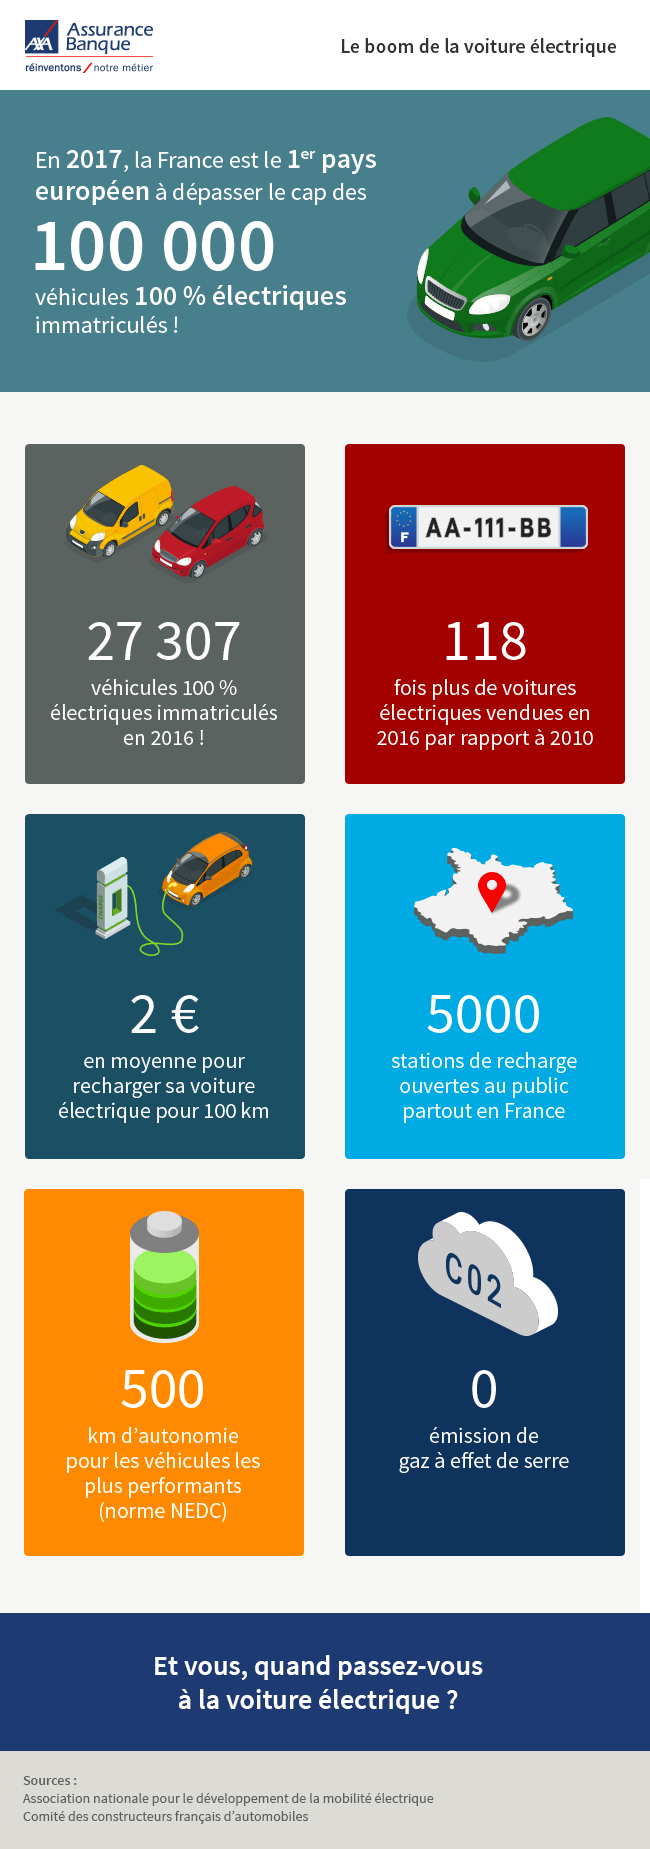 Infographie sur le boom de la voiture électrique en France en 2017